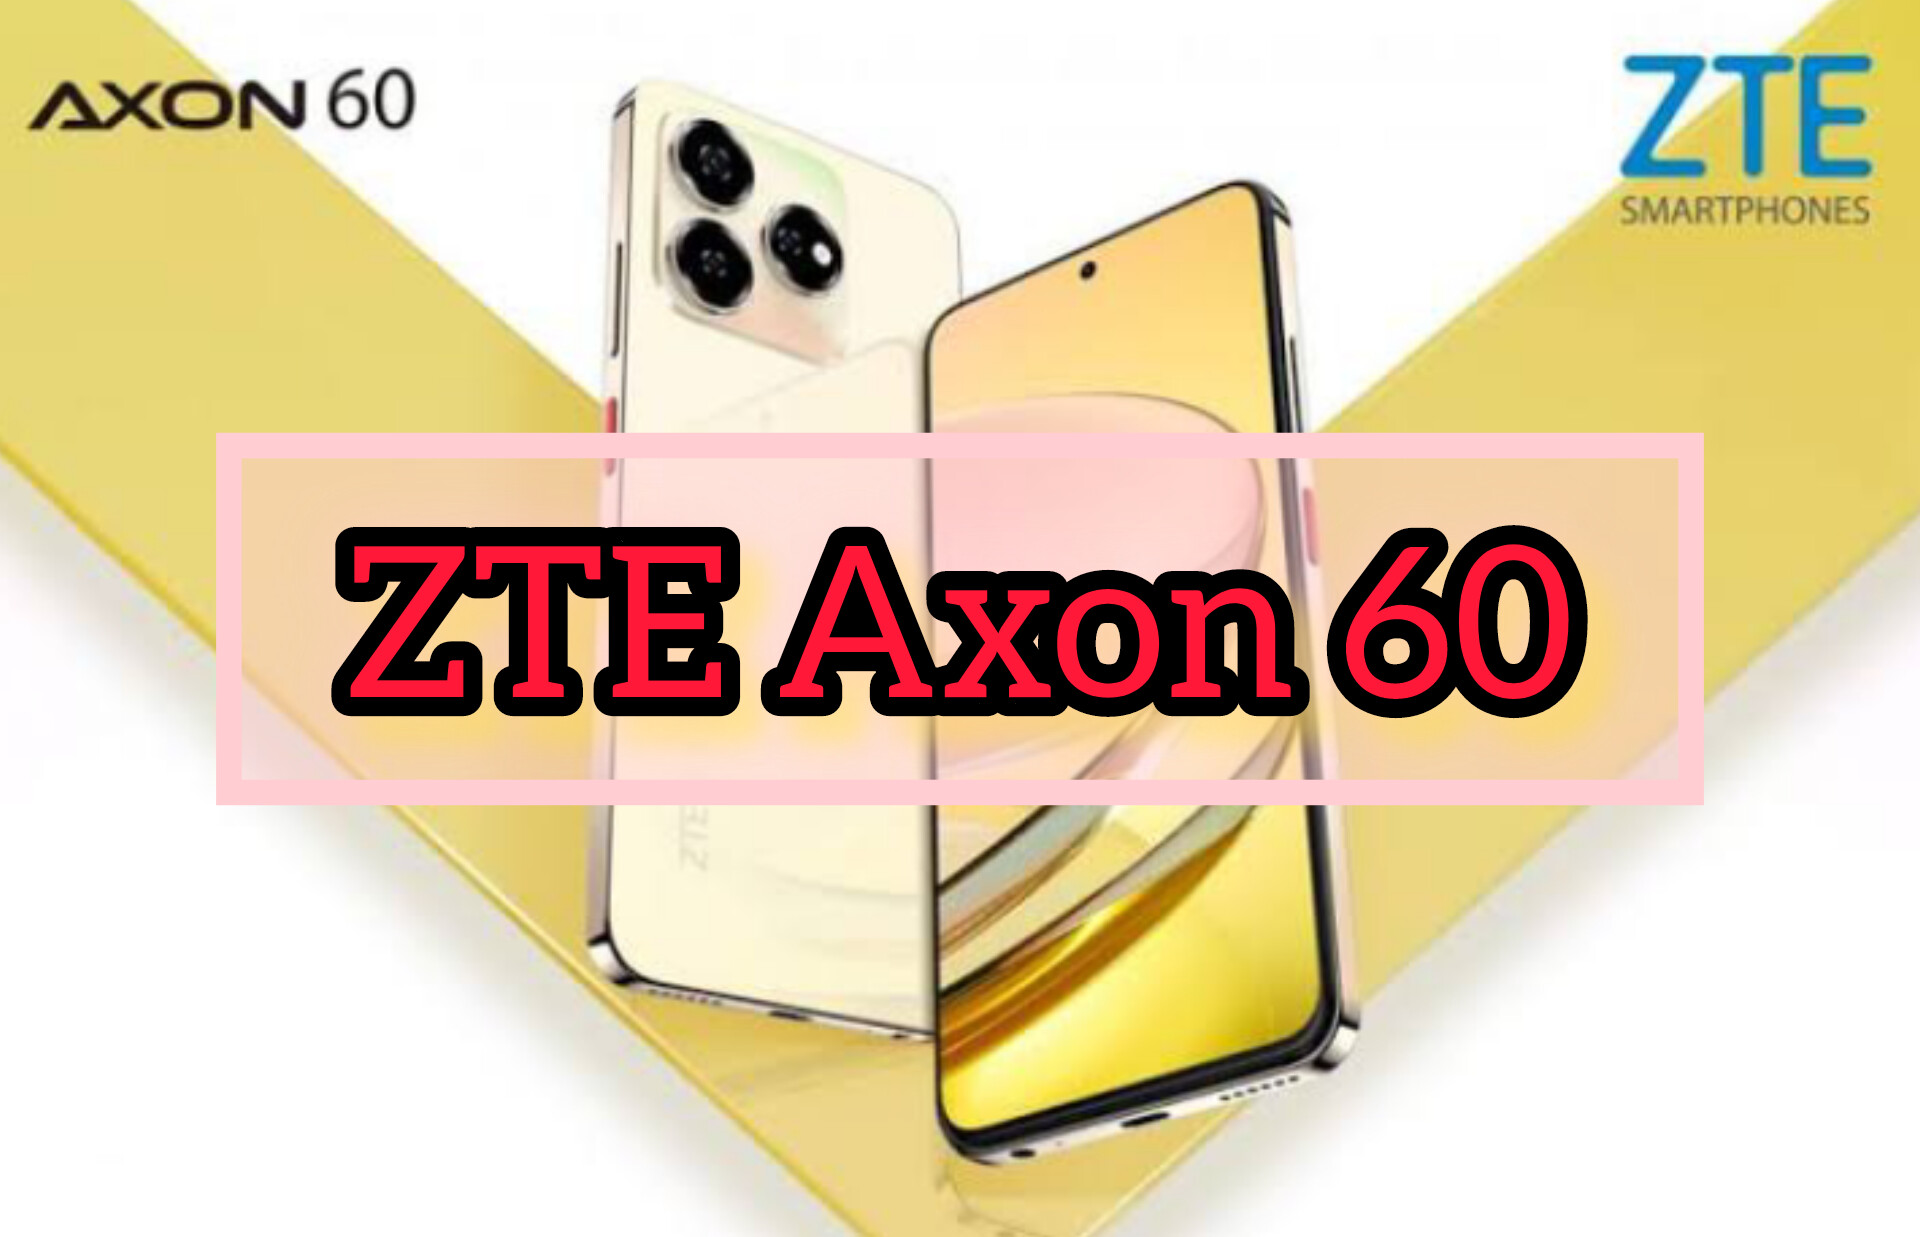 ZTE Axon 60, Spek Idaman Dengan IPS LCD Visual CPU Octa Core dan Fitur Kamera LED Flash. Harga Rp. 3 Jutaan